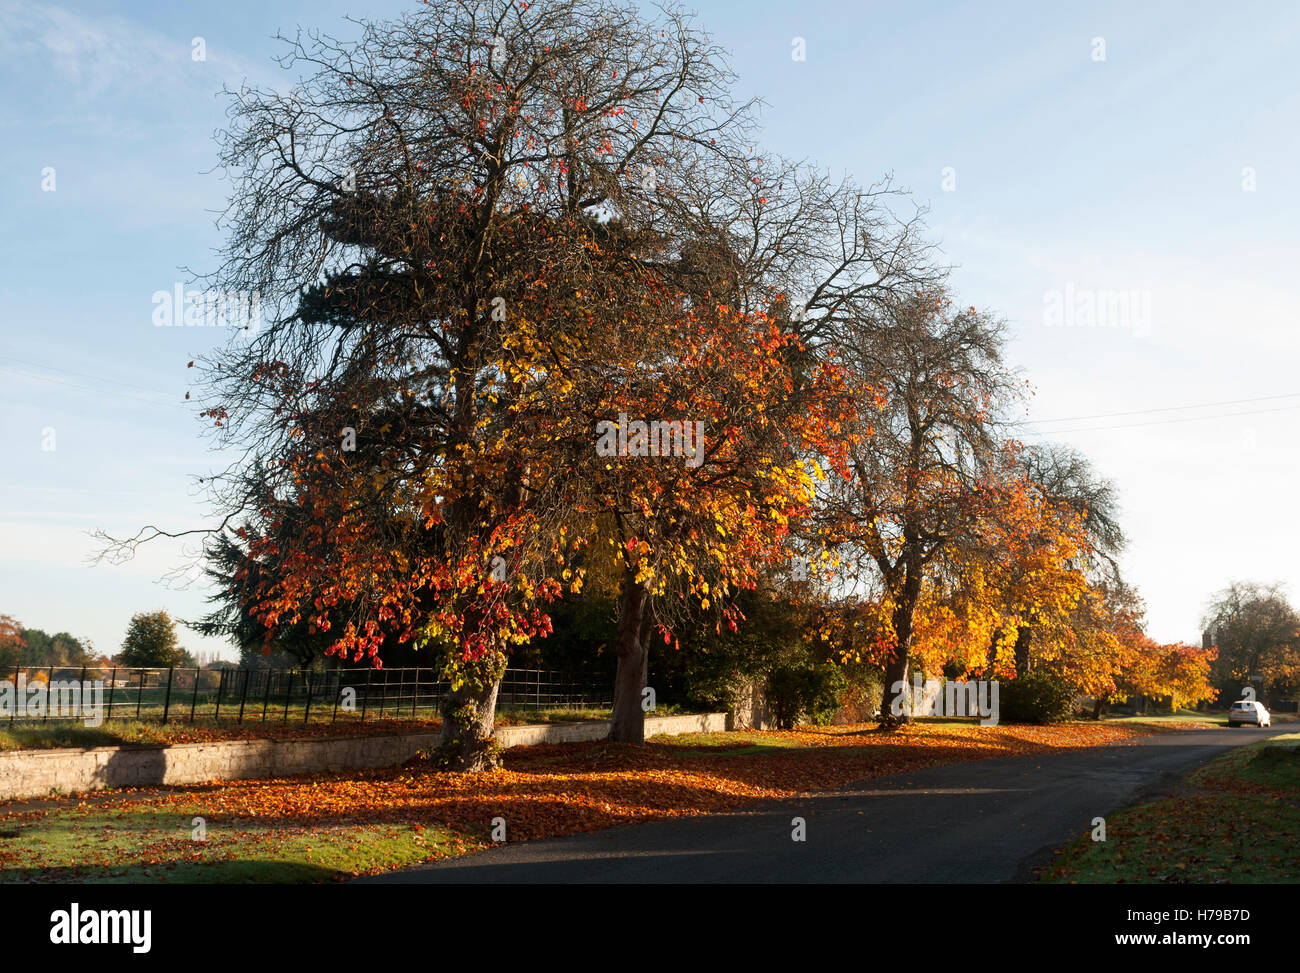 Trees in autumn in Honington village, Warwickshire, England, UK Stock Photo